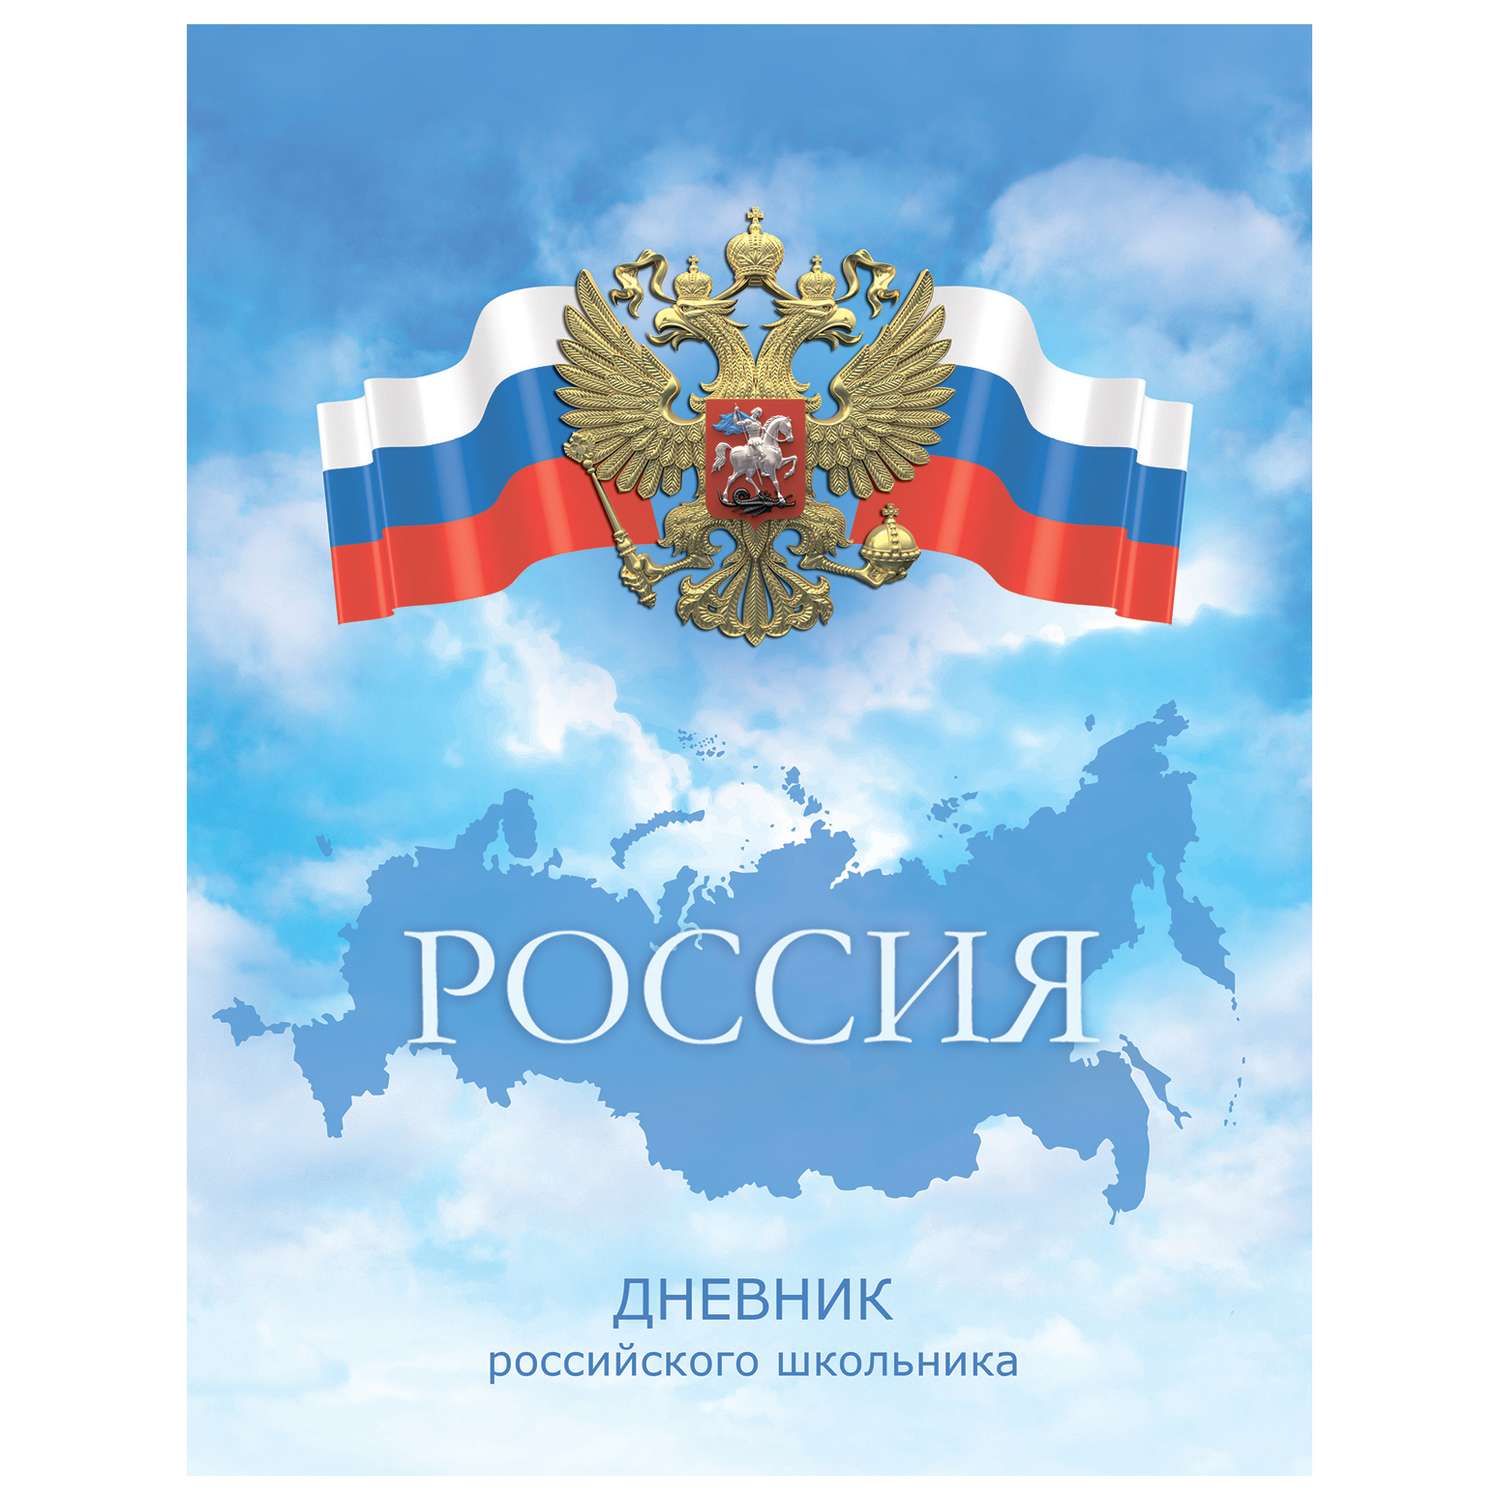 Дневник российского школьника Феникс + Флаг и Герб - фото 1